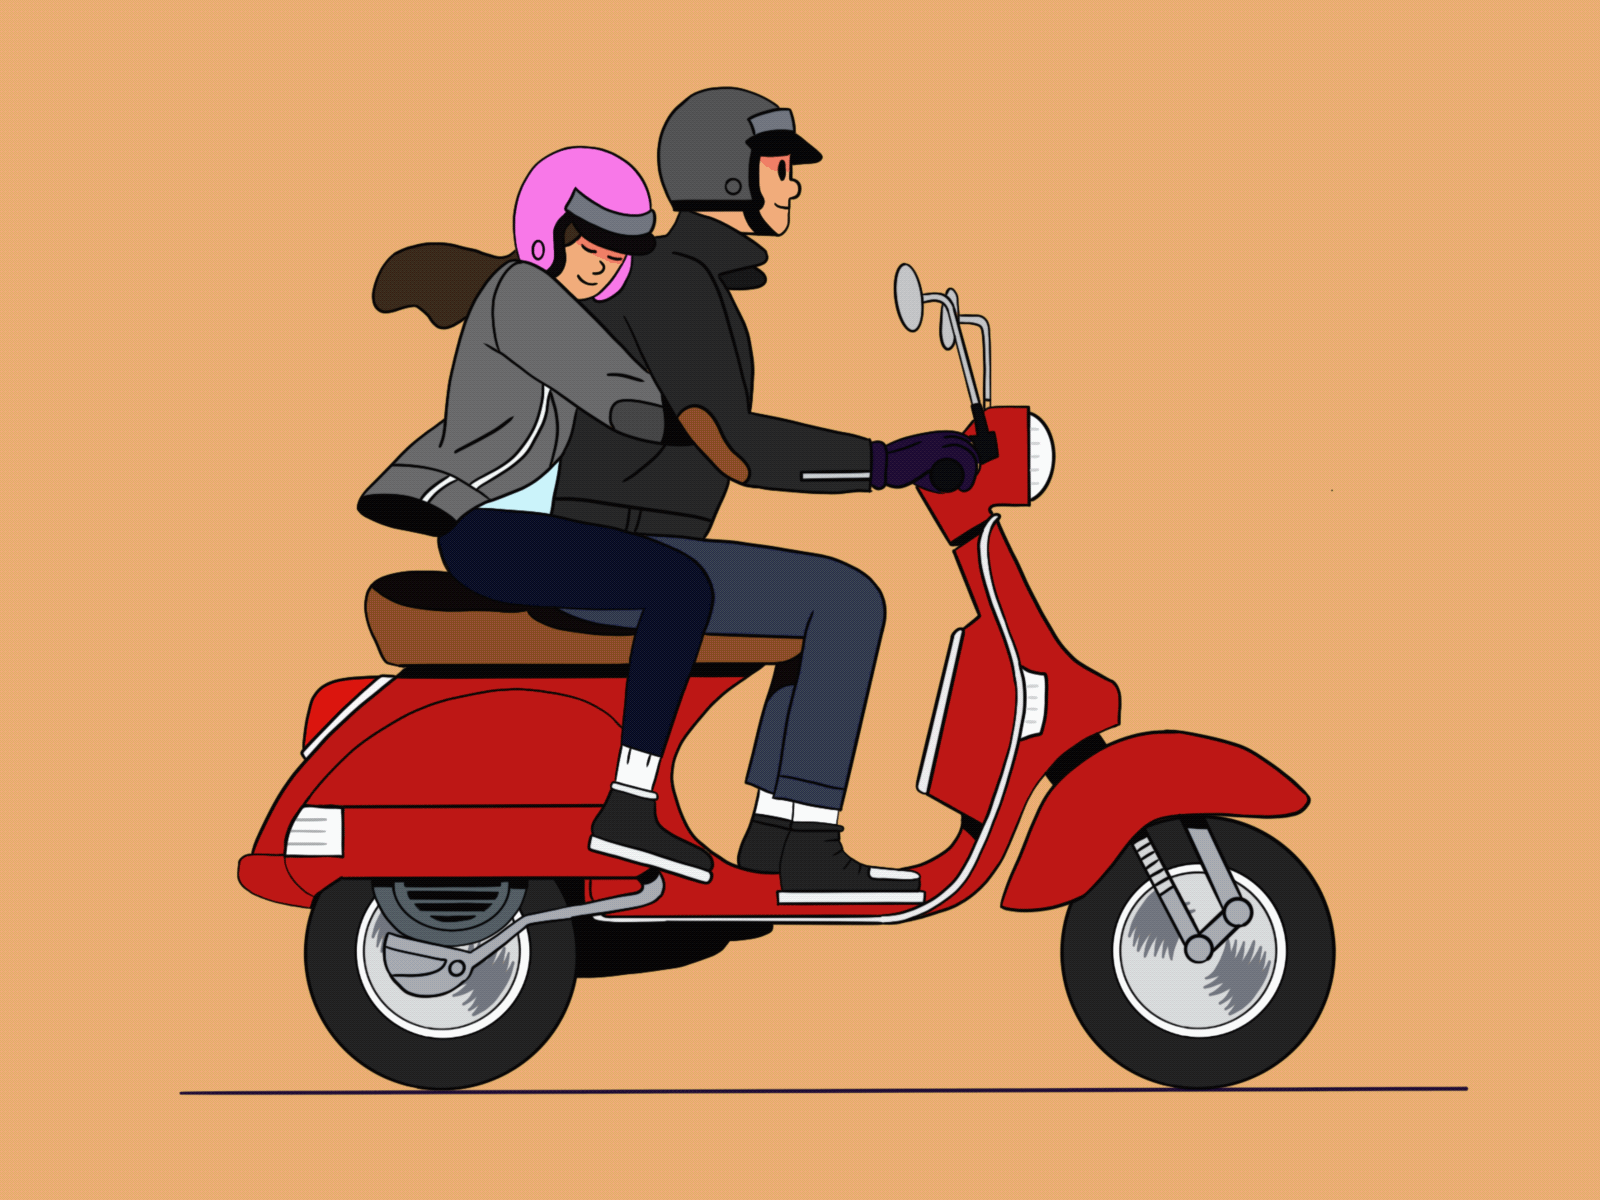 Adventure 2020 adventure beautiful biker boy cartoon design fun girl illustration love procreate scooter